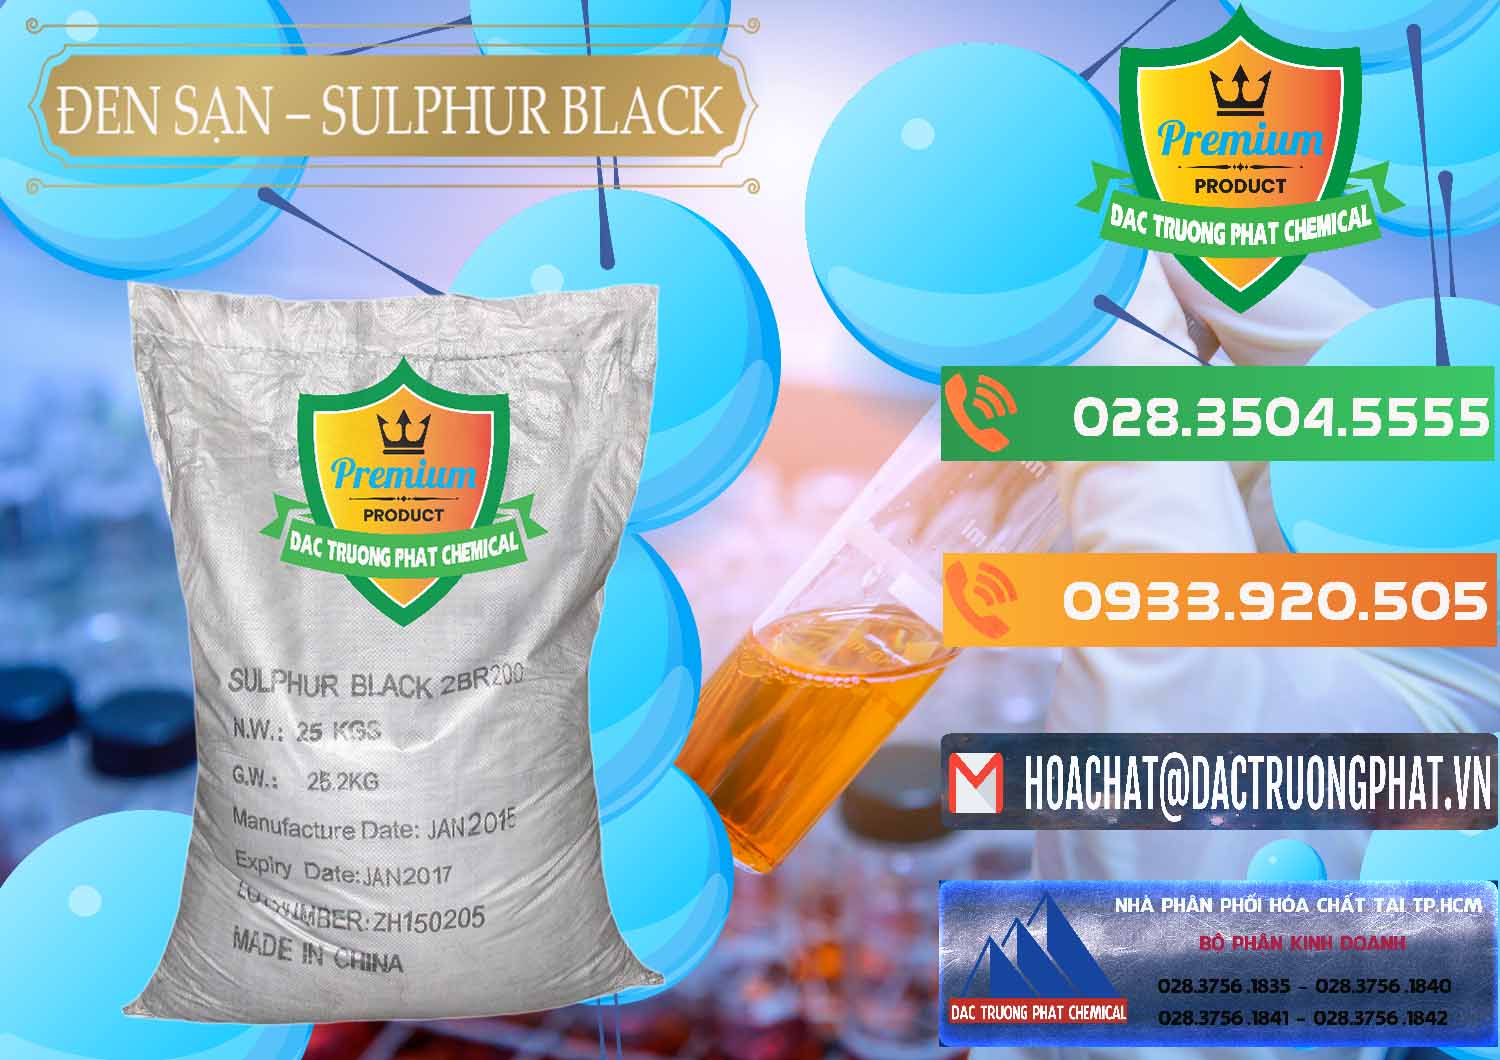 Cty chuyên bán và cung ứng Đen Sạn – Sulphur Black Trung Quốc China - 0062 - Công ty chuyên nhập khẩu và cung cấp hóa chất tại TP.HCM - hoachatxulynuoc.com.vn